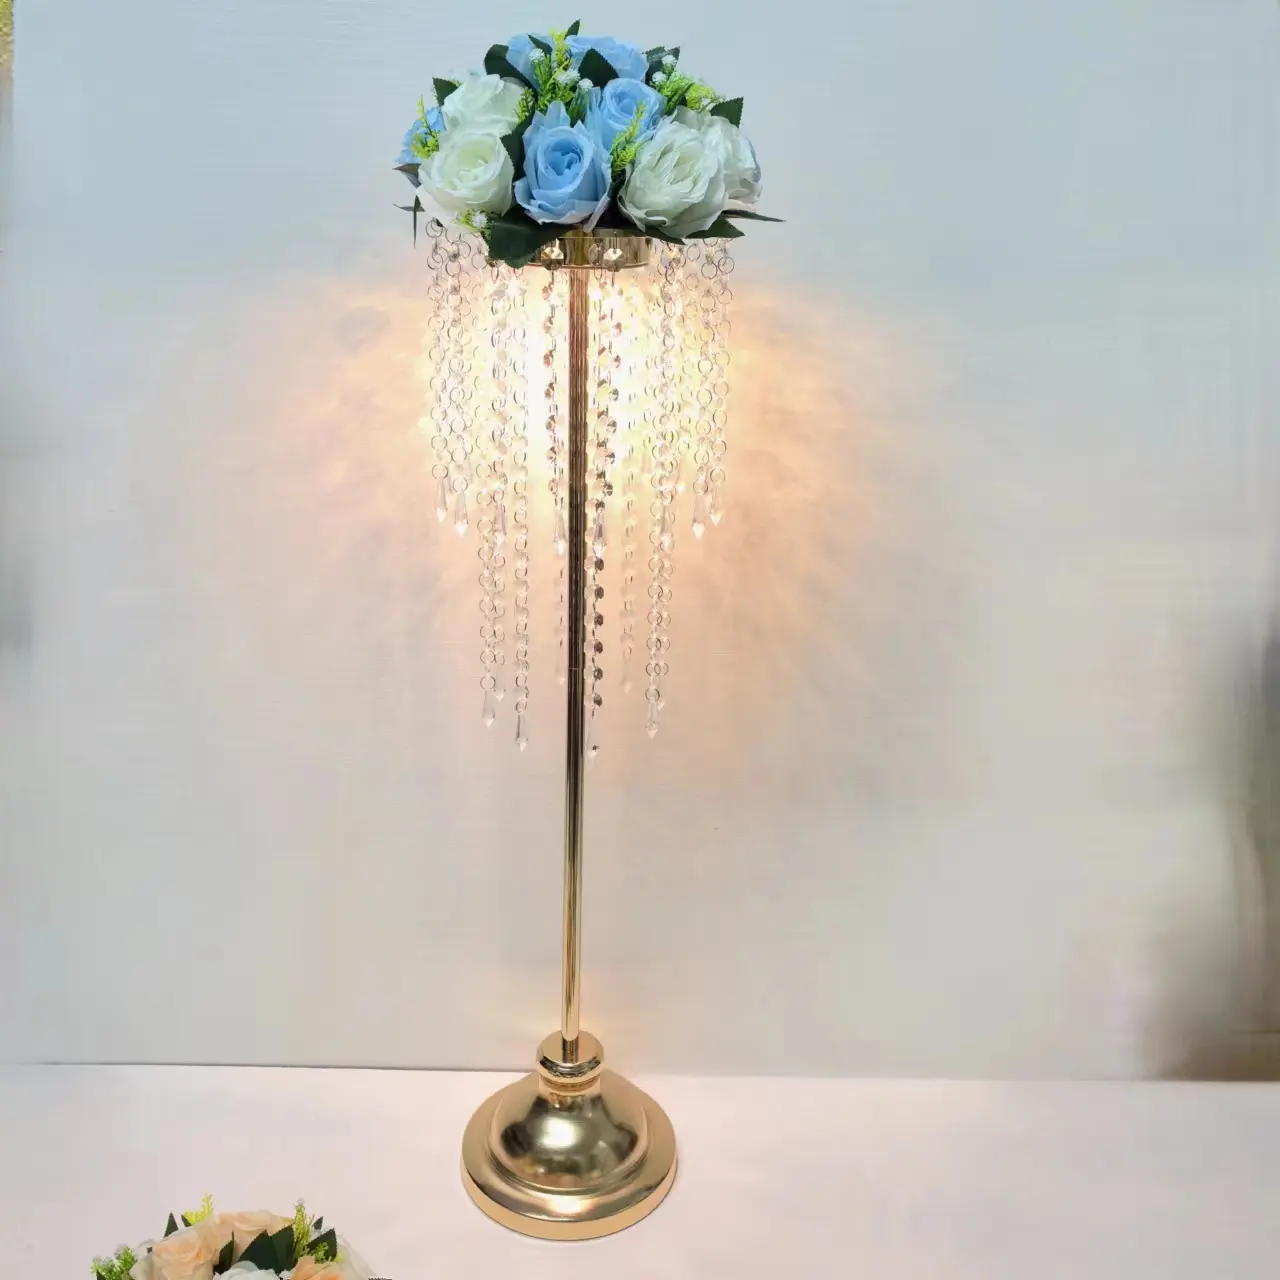 अन्य वेडिंग टेबल सेंटरपीस सजावट क्रिस्टल मनका पर्दे हल्के फूल स्टैंड के साथ सोने की धातु प्लिंथ डिस्प्ले स्टैंड